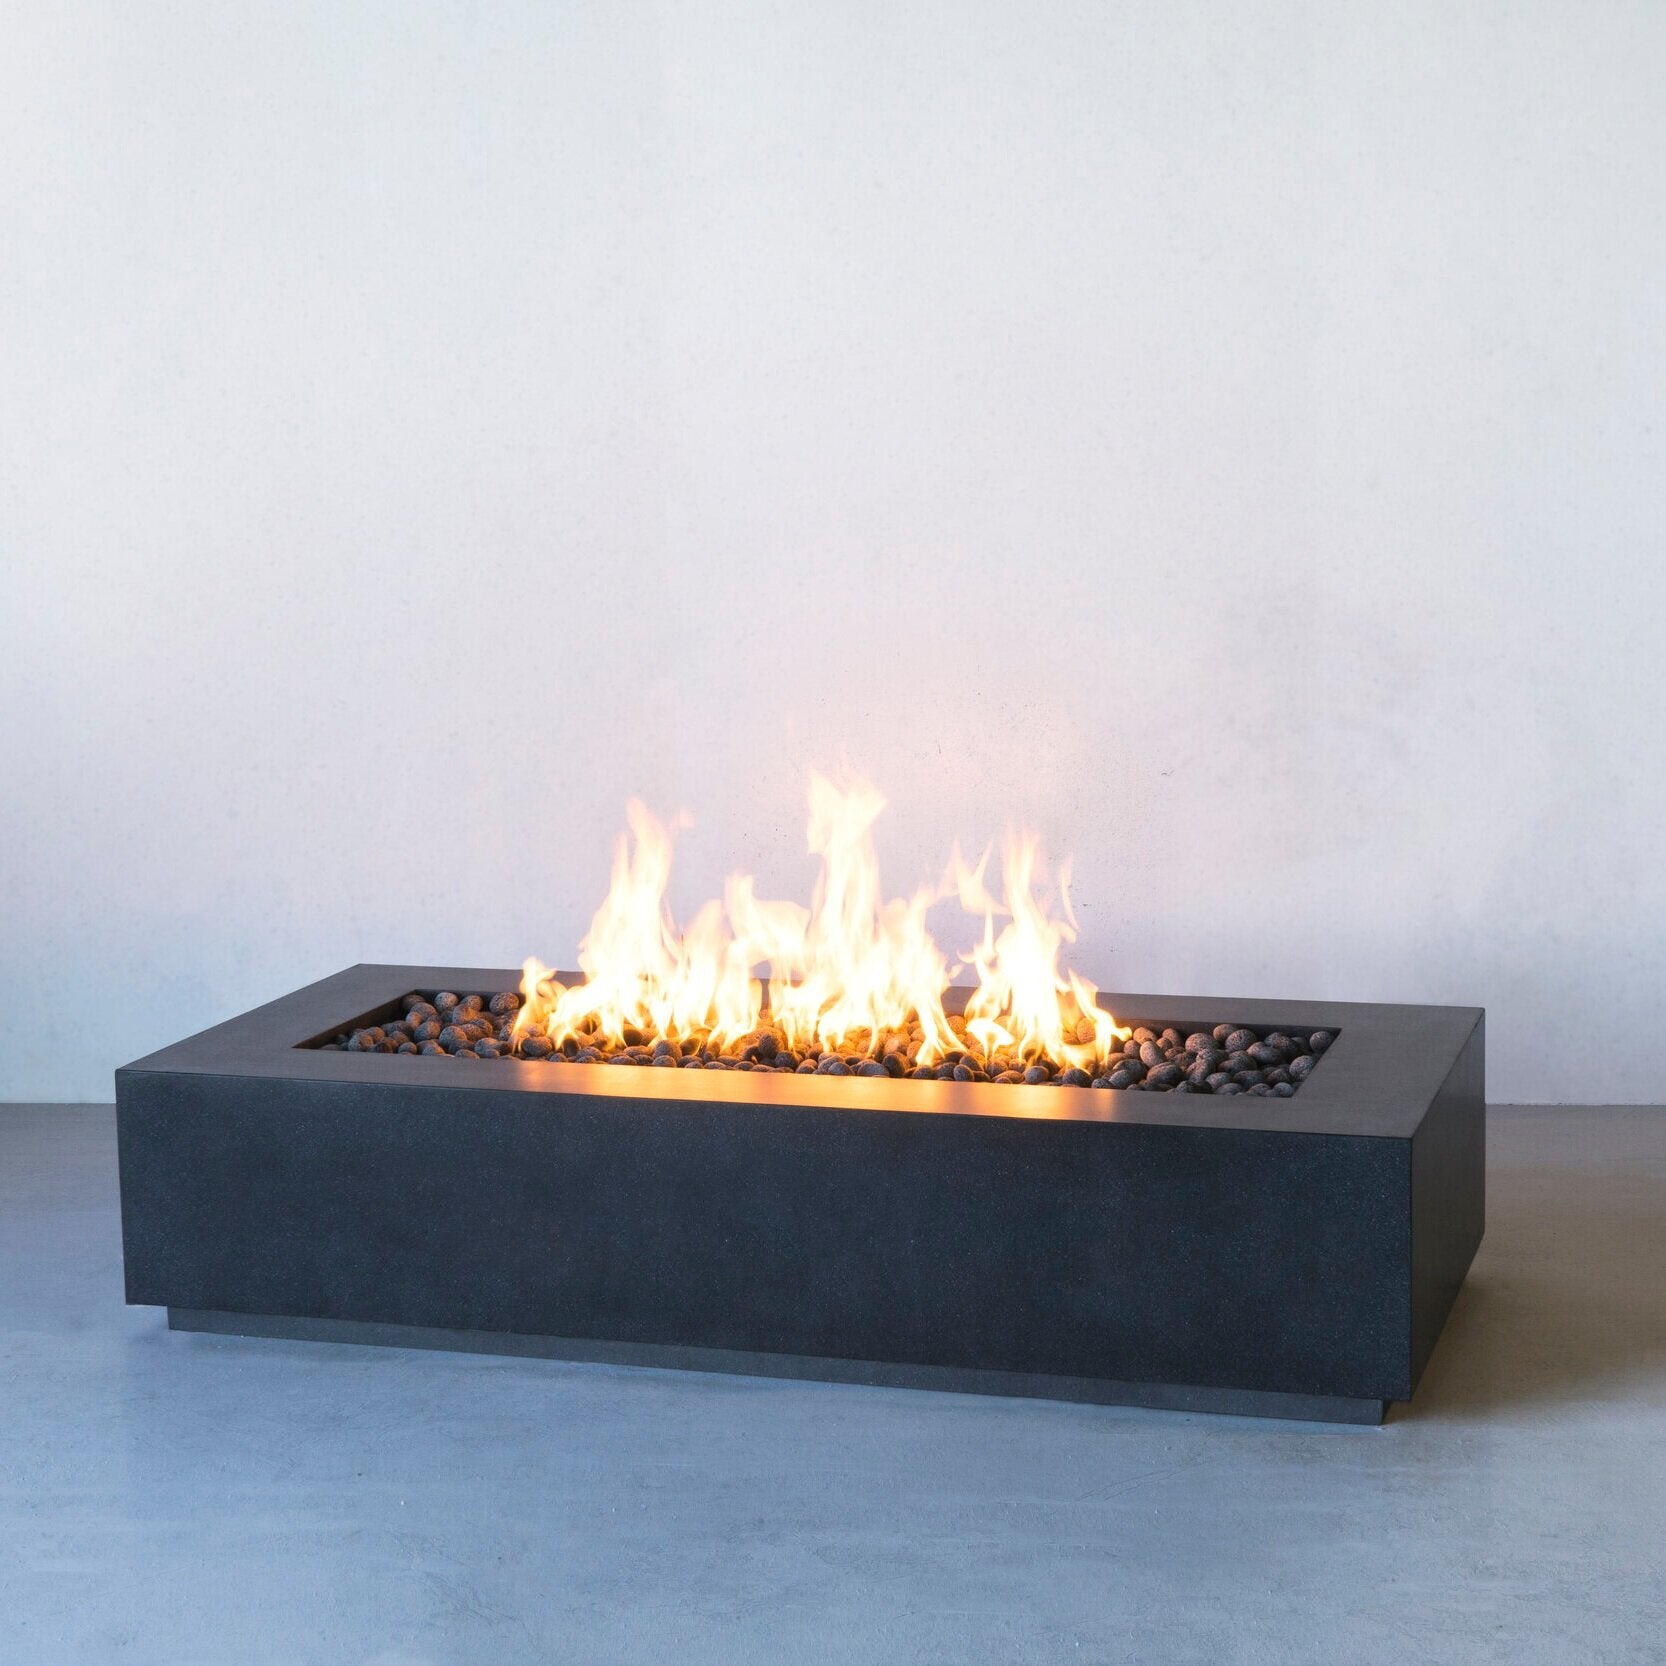 Lumera rectangular concrete firepit in dark gray lifestyle shot